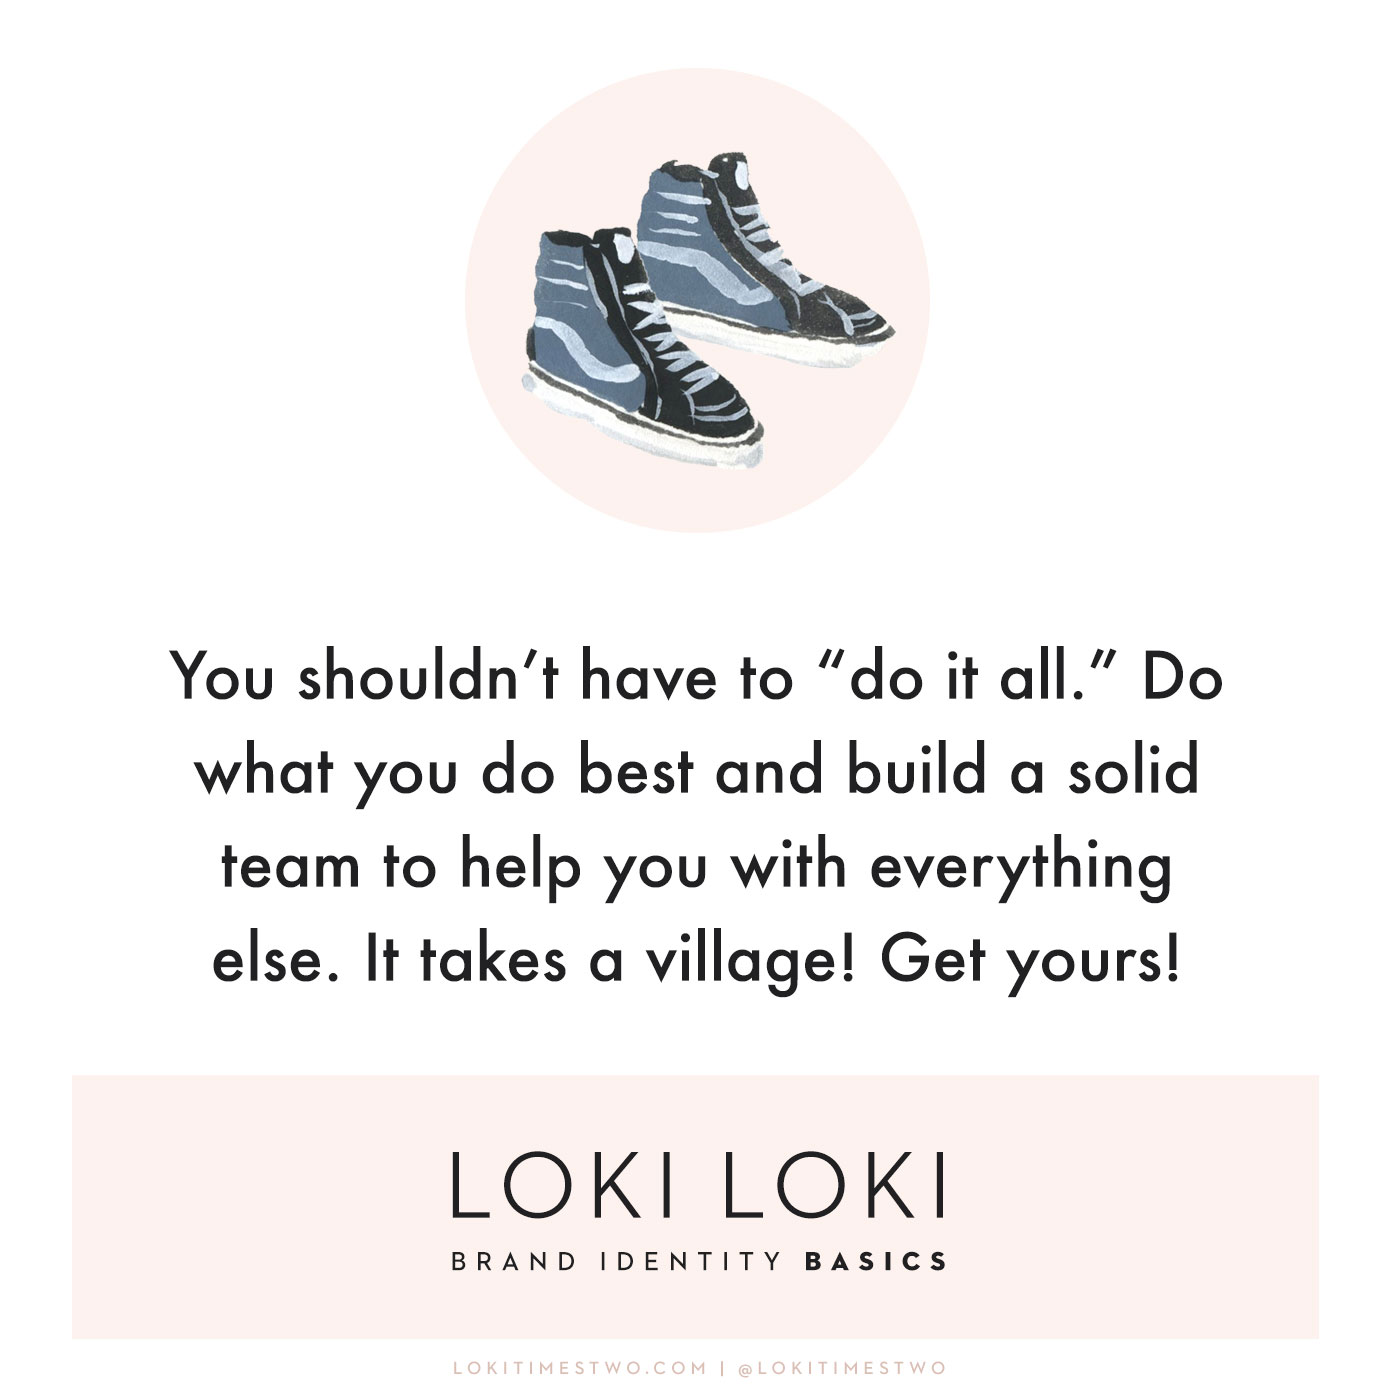 Loki Loki Brand Identity Basics: Old School Vans